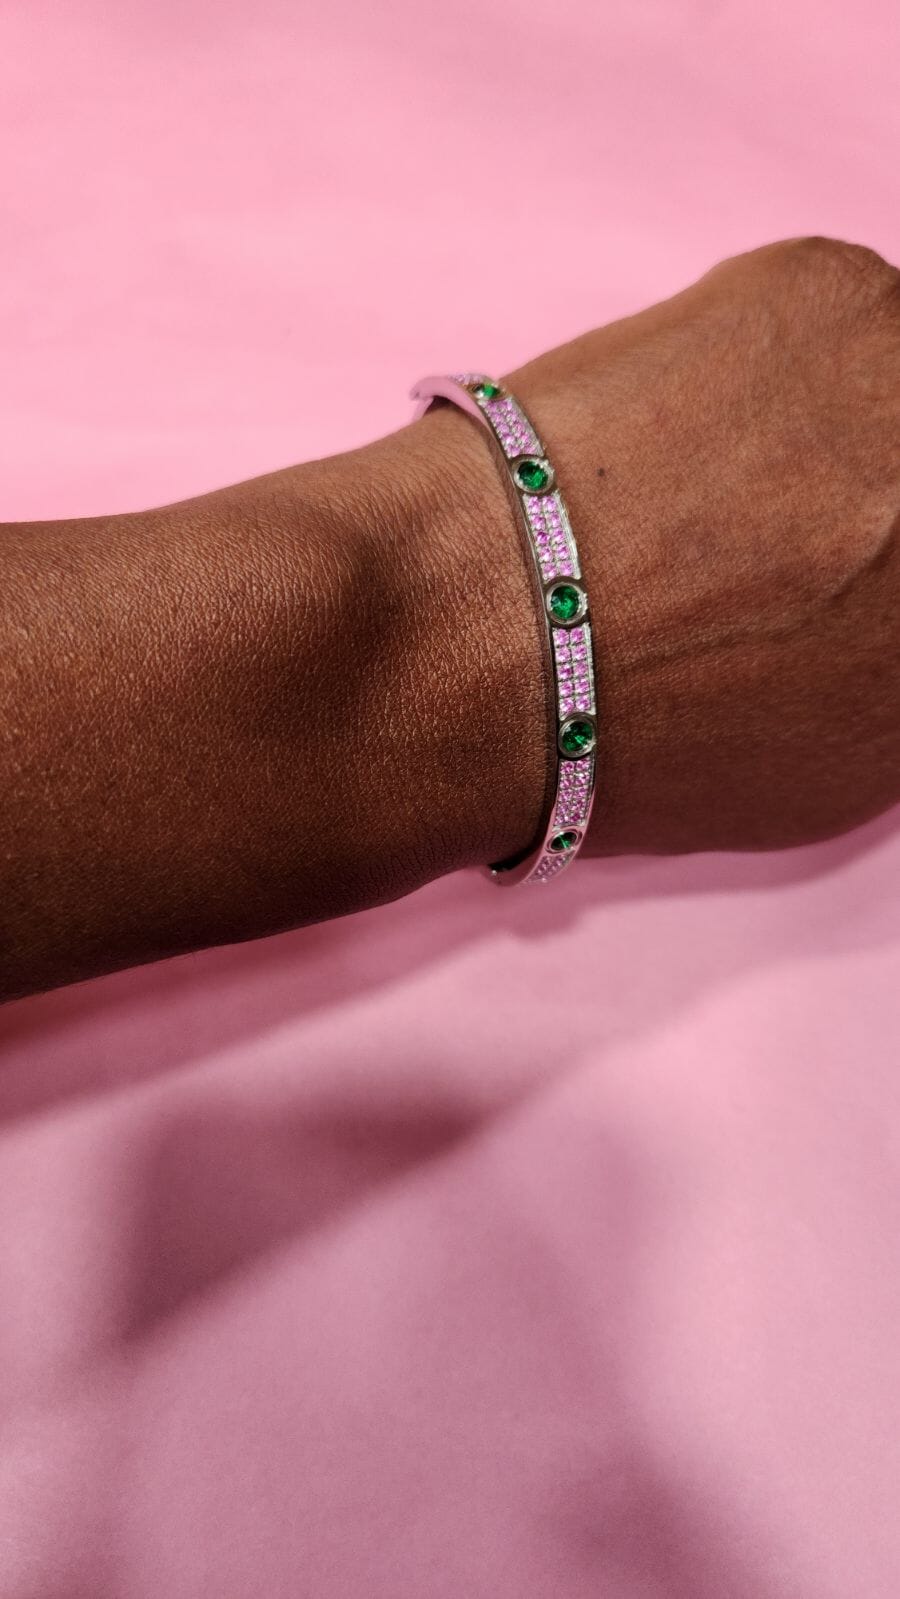 Bahia Pink and Green CZ Encrusted Bracelet Bracelets Trendzio Jewelry 